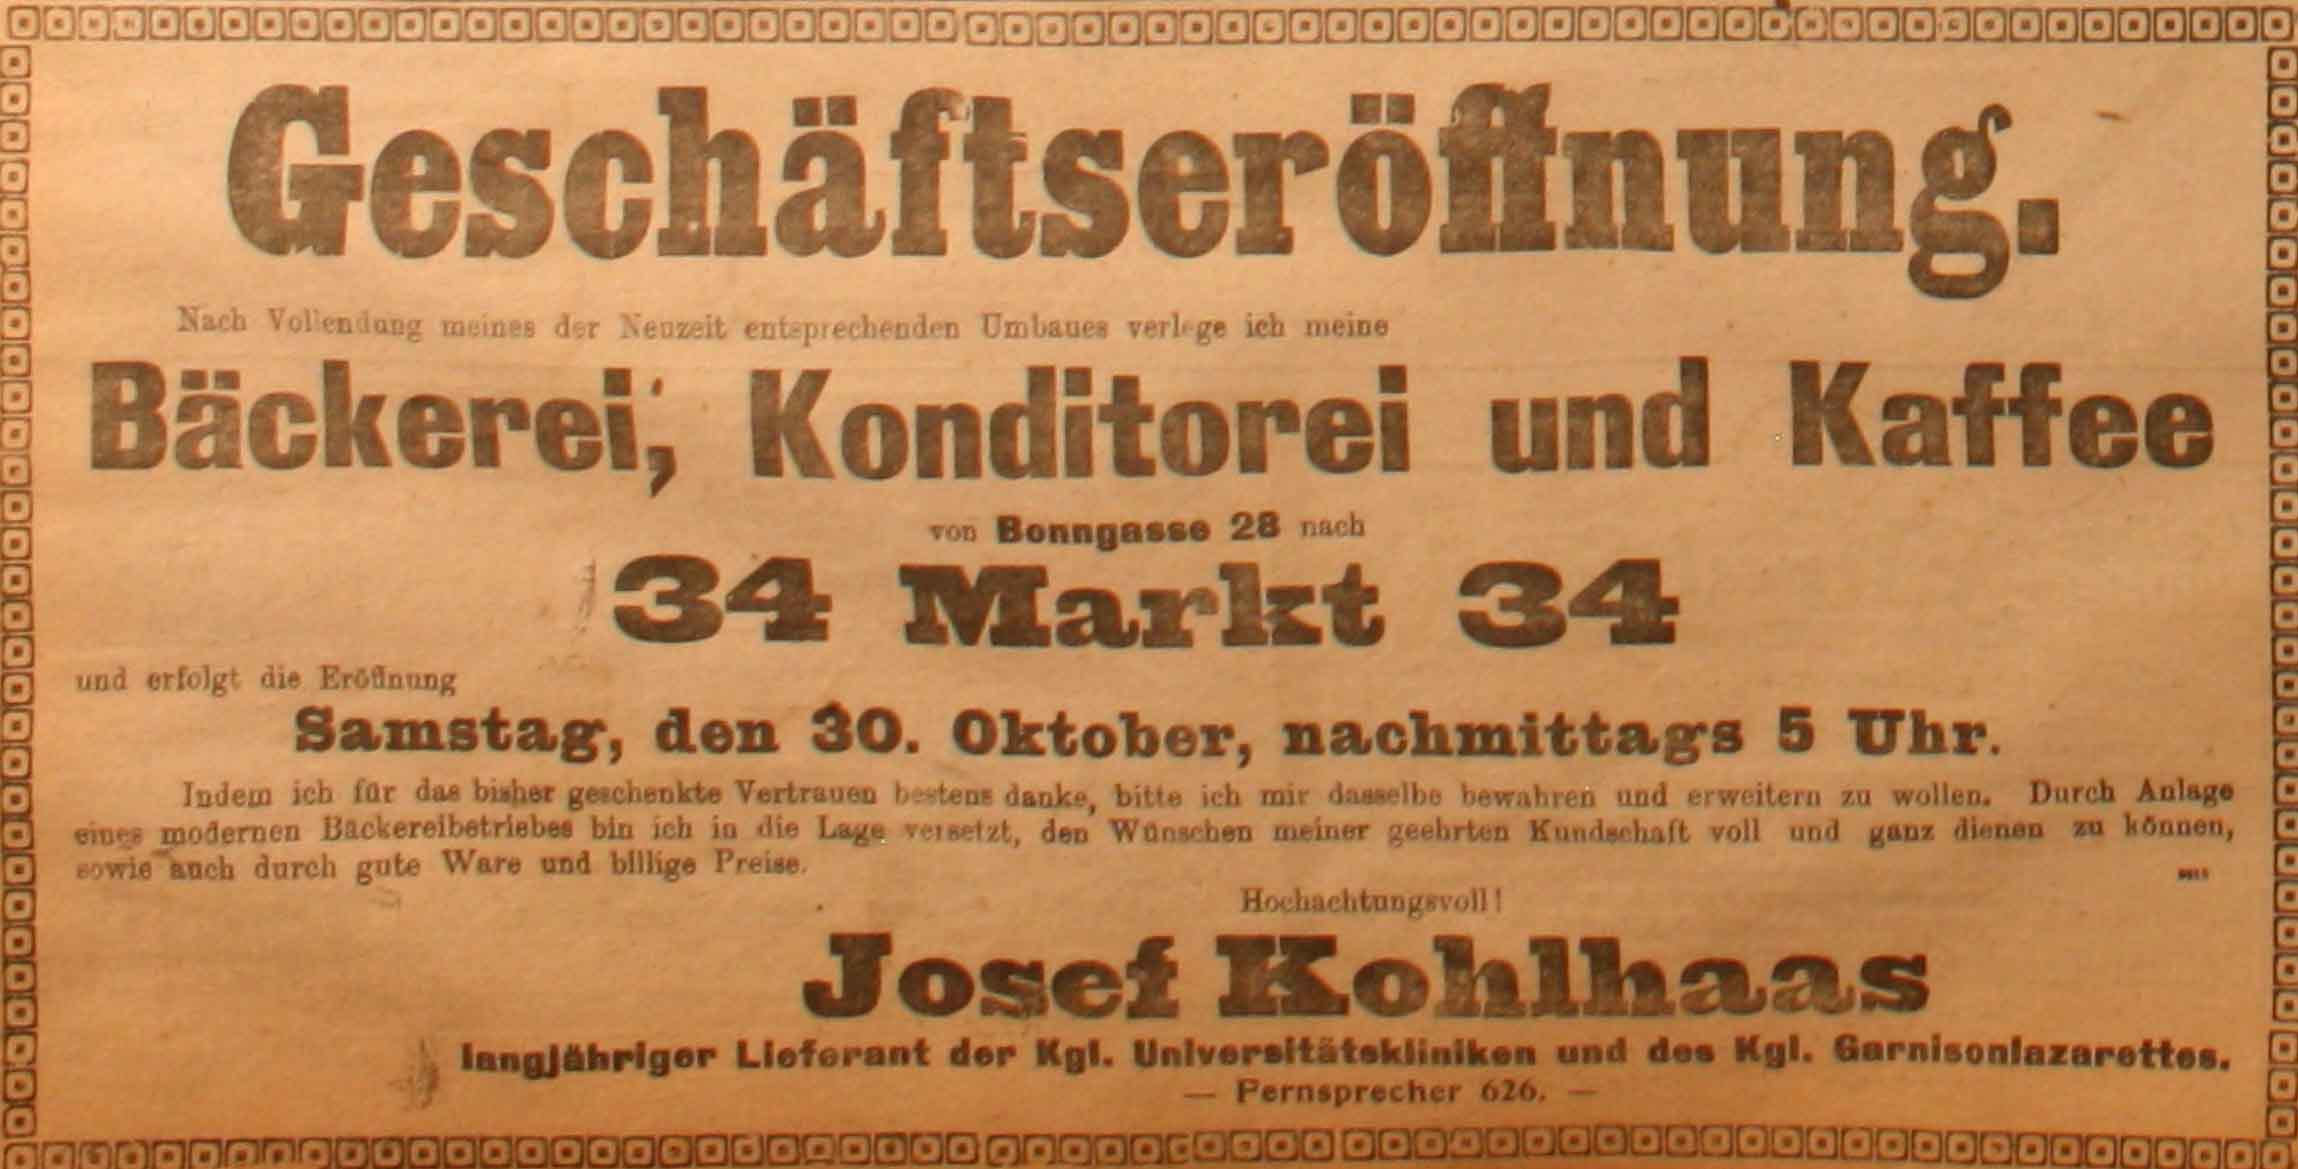 Anzeige in der Deutschen Reichs-Zeitung vom 30. Oktober 1915